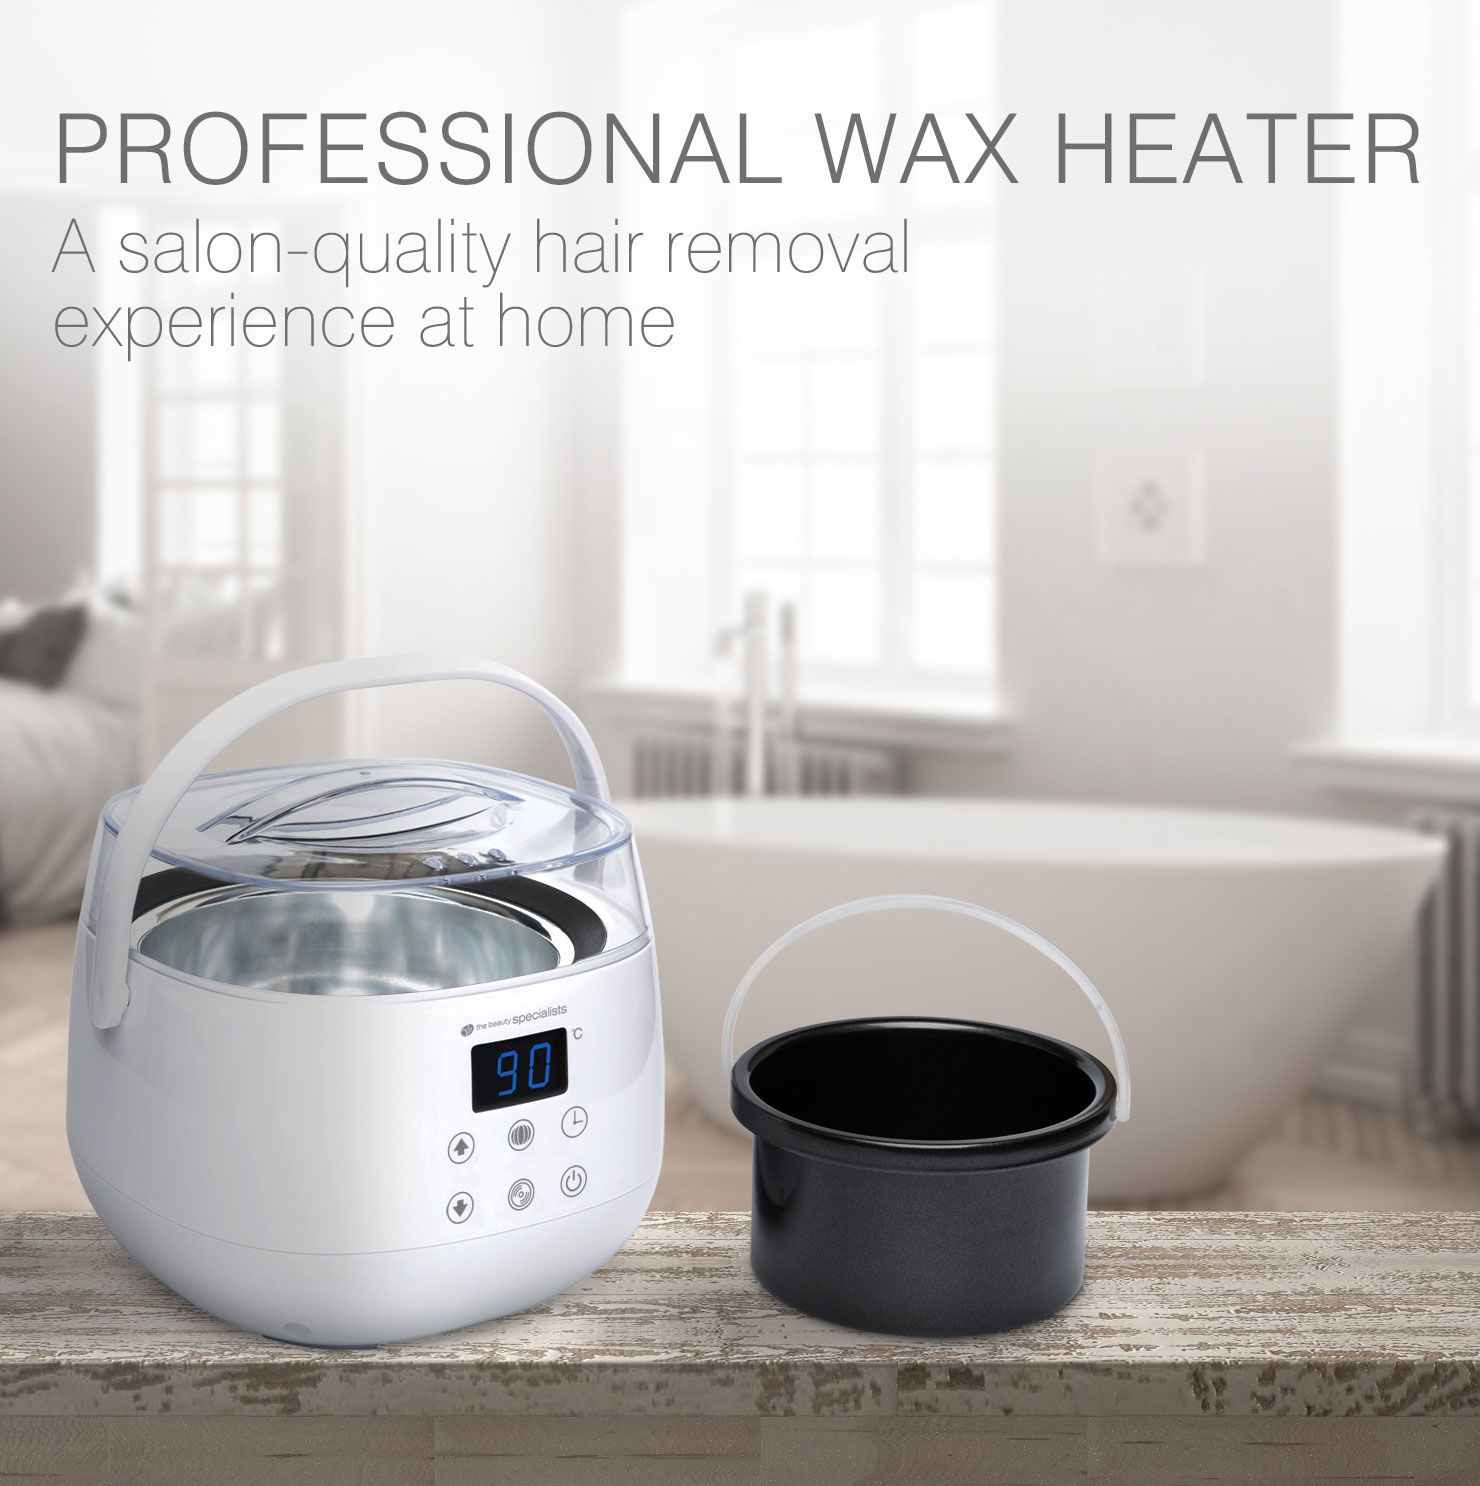 Professional Wax Heater